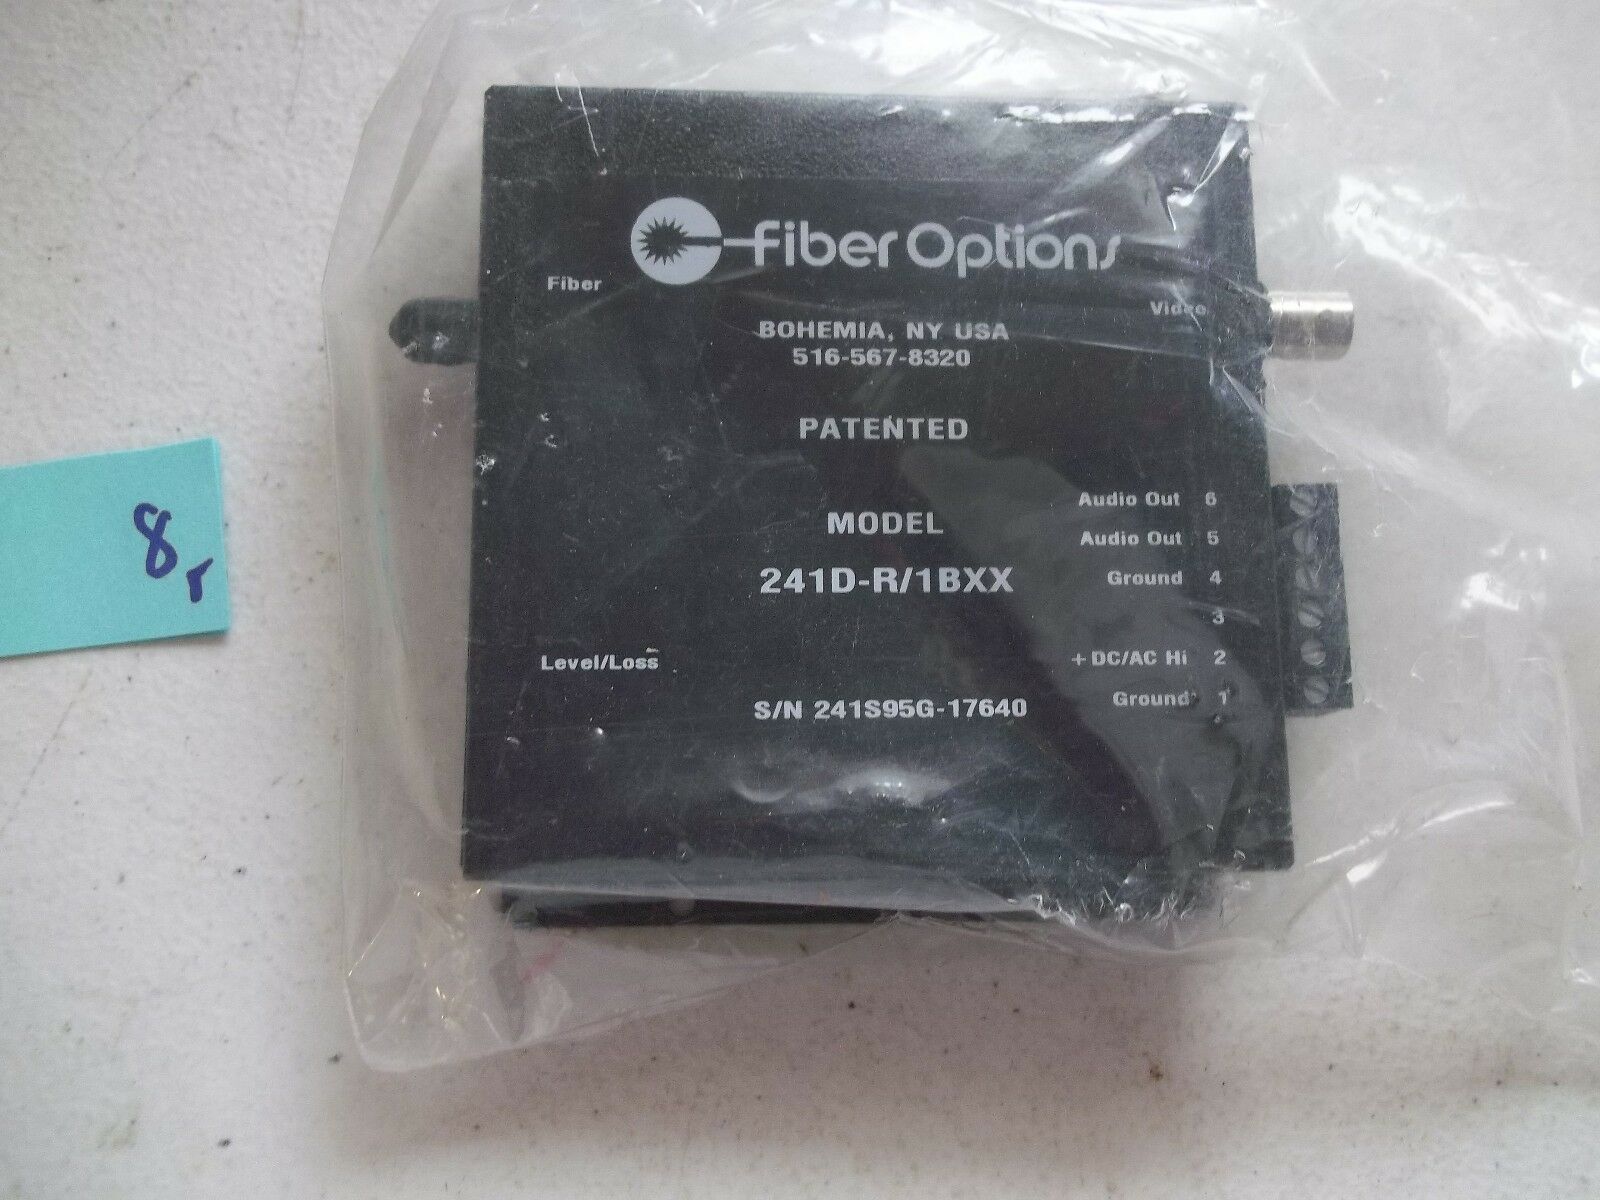 New No Box Fiber Options 241d/1bxx (149-1)